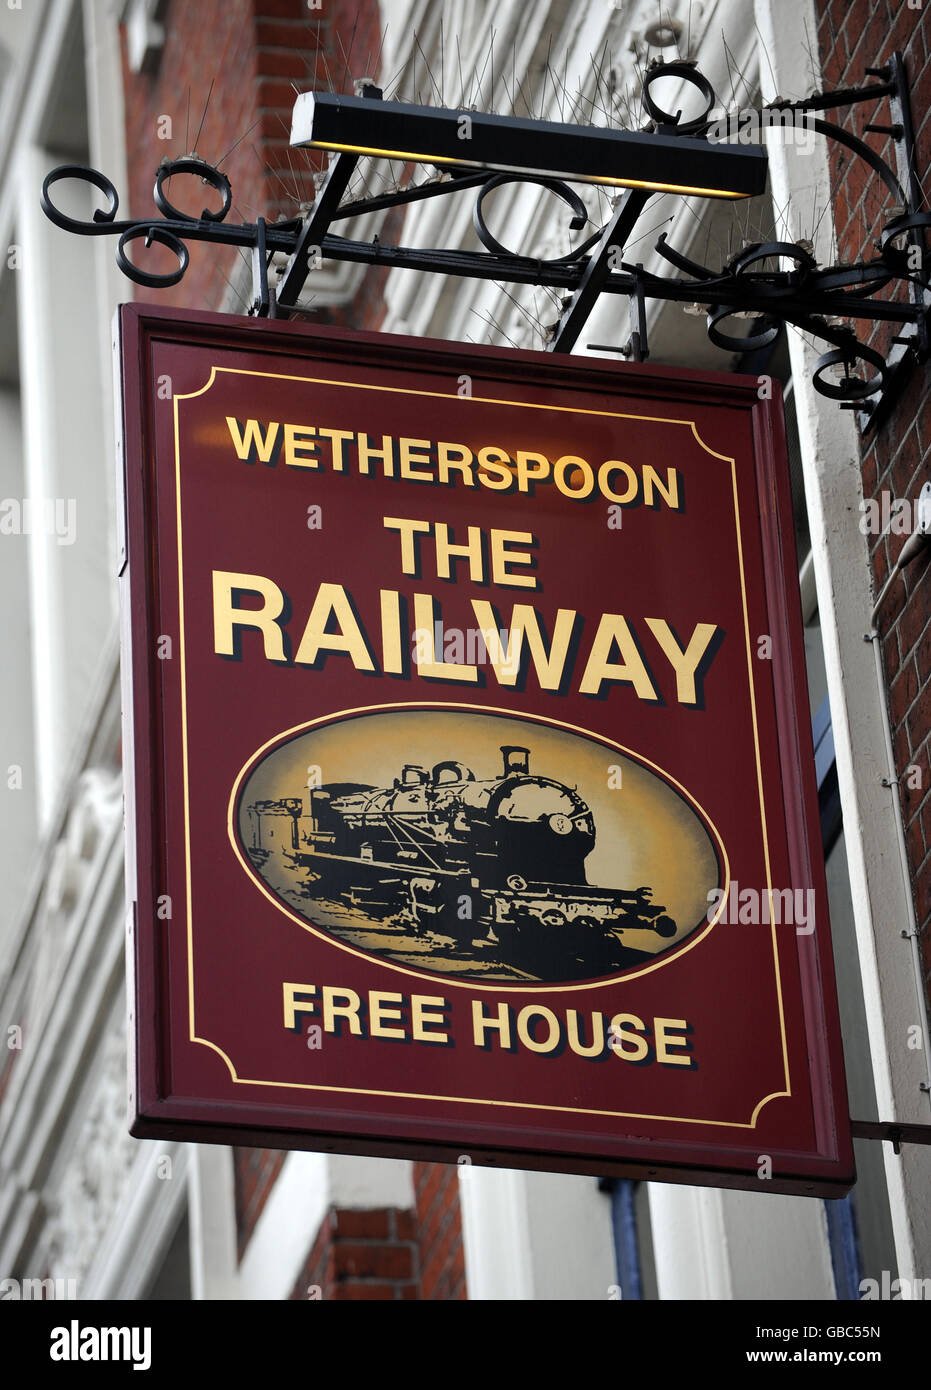 Allgemeine Ansicht des JD Wetherspoon Pub Schild an einem öffentlichen Haus in Putney Südwesten Londons. Stockfoto